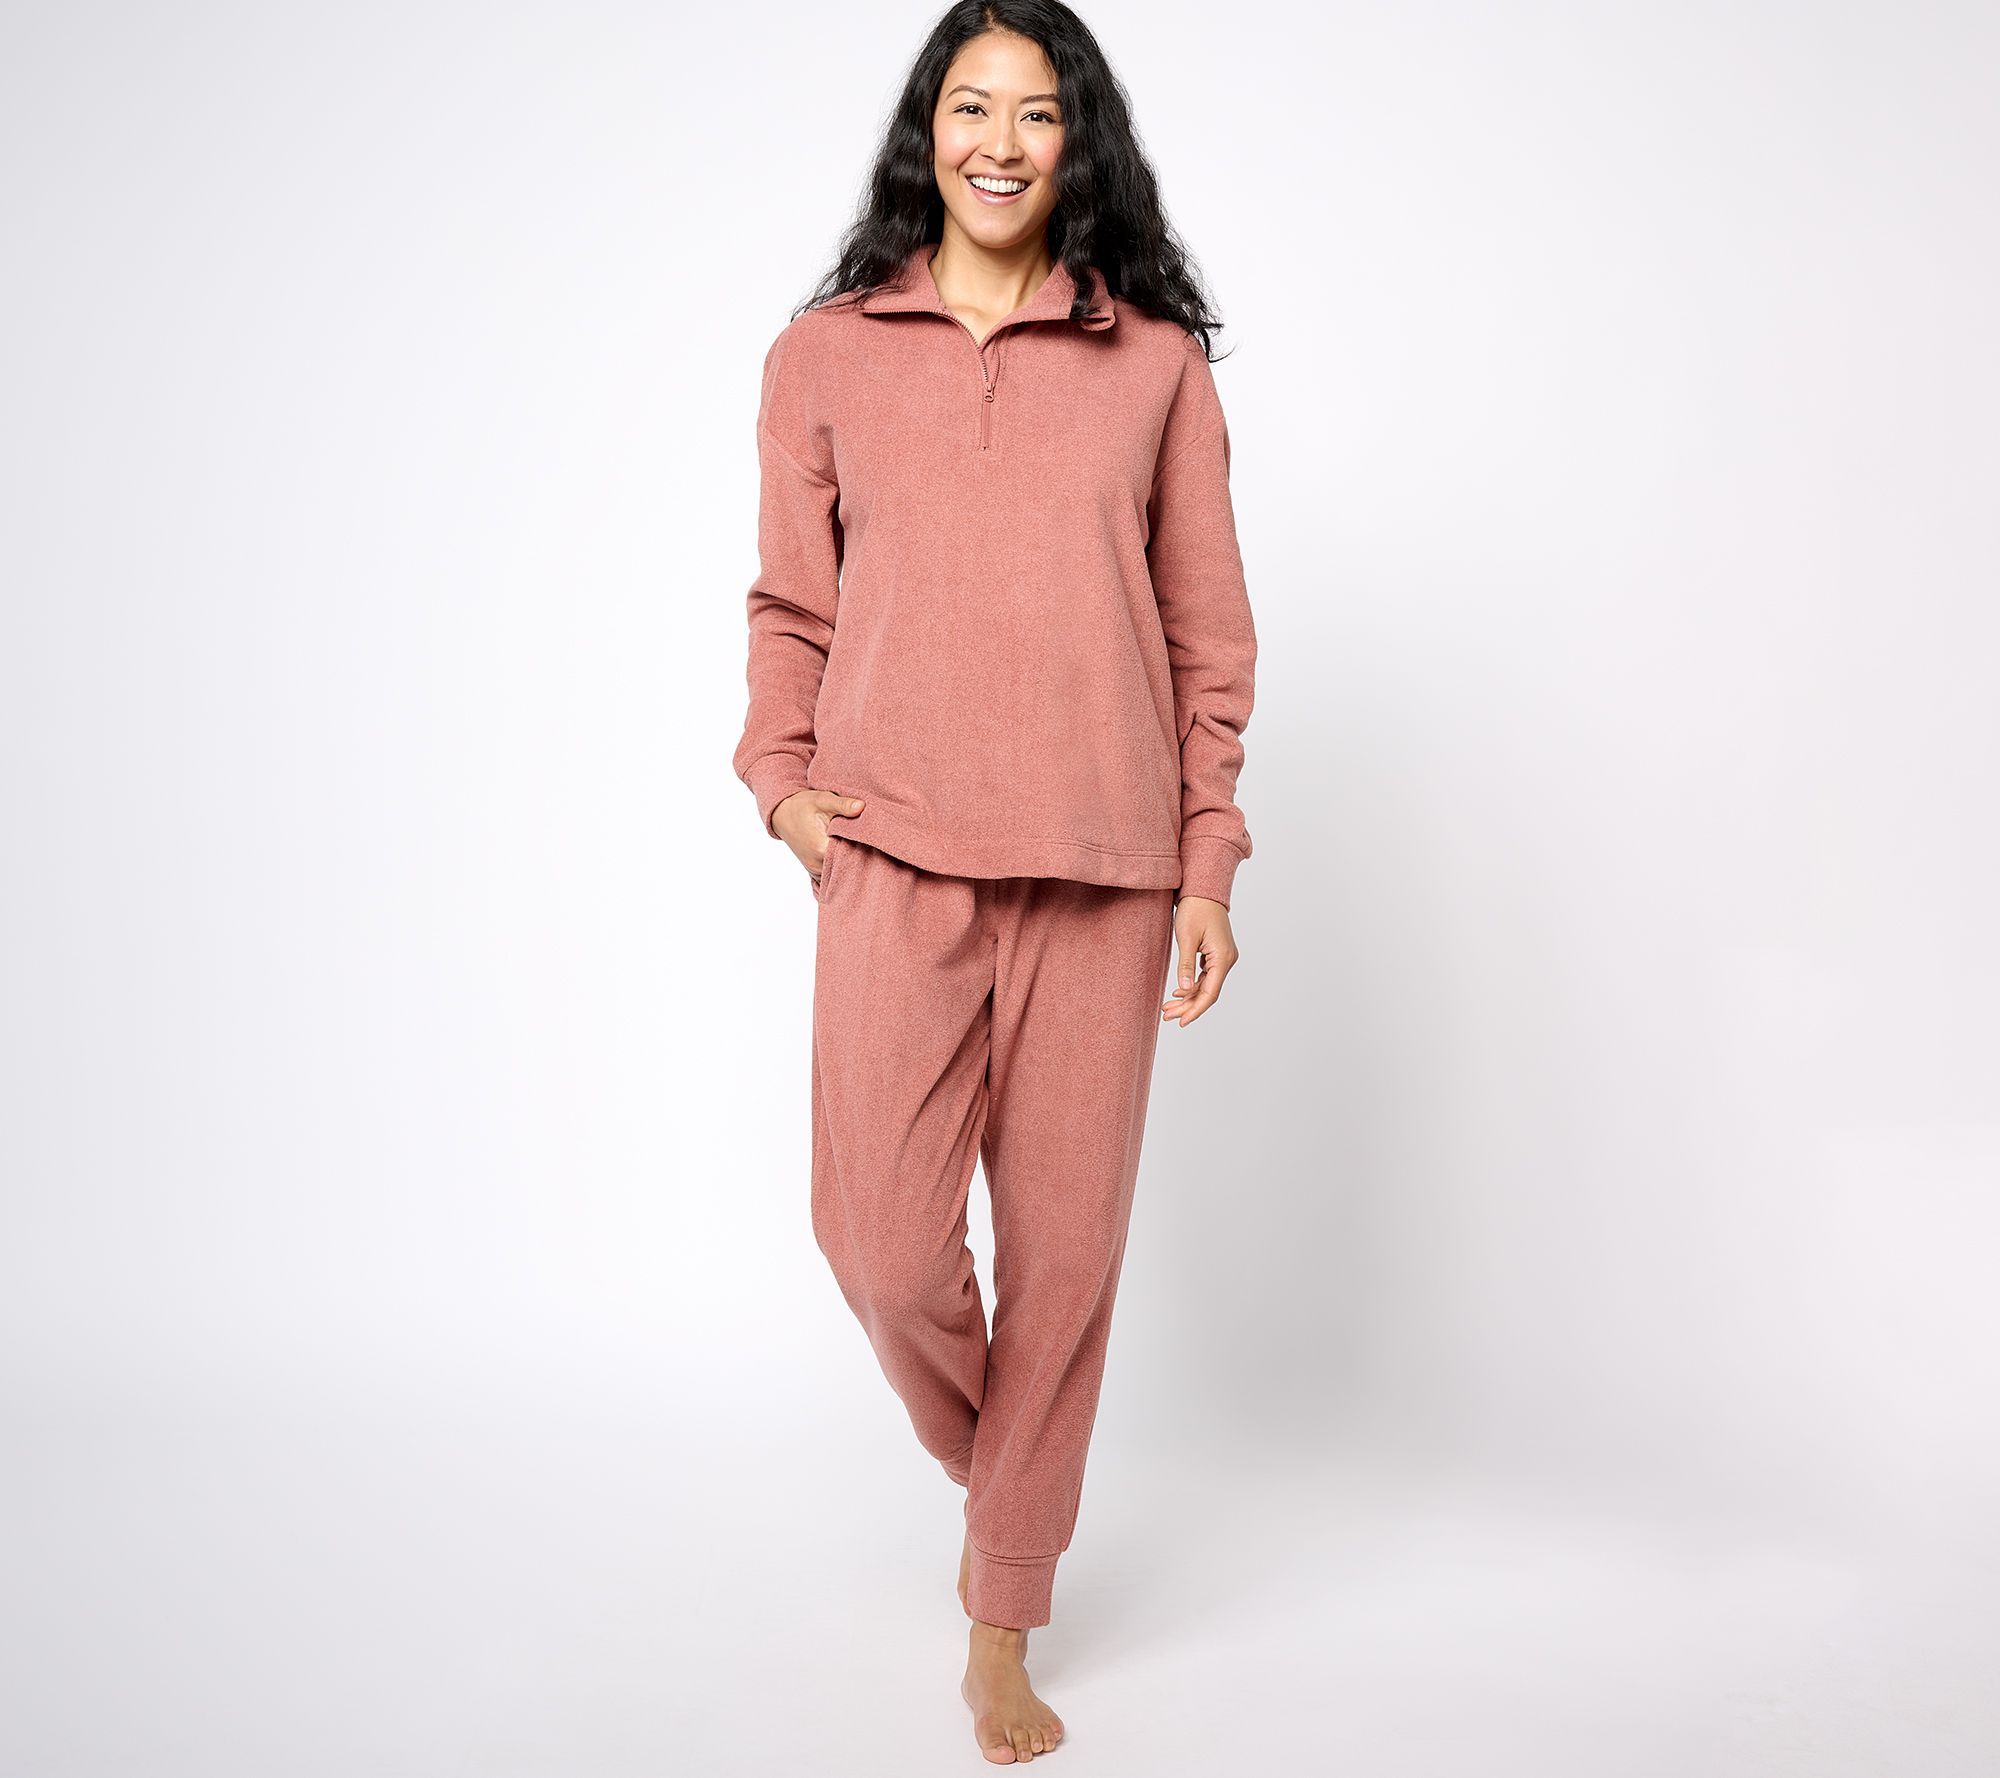 Berkshire Blanket Women's Plus Sz Sleepwear 1X Homewear Microfleece Pink A612908